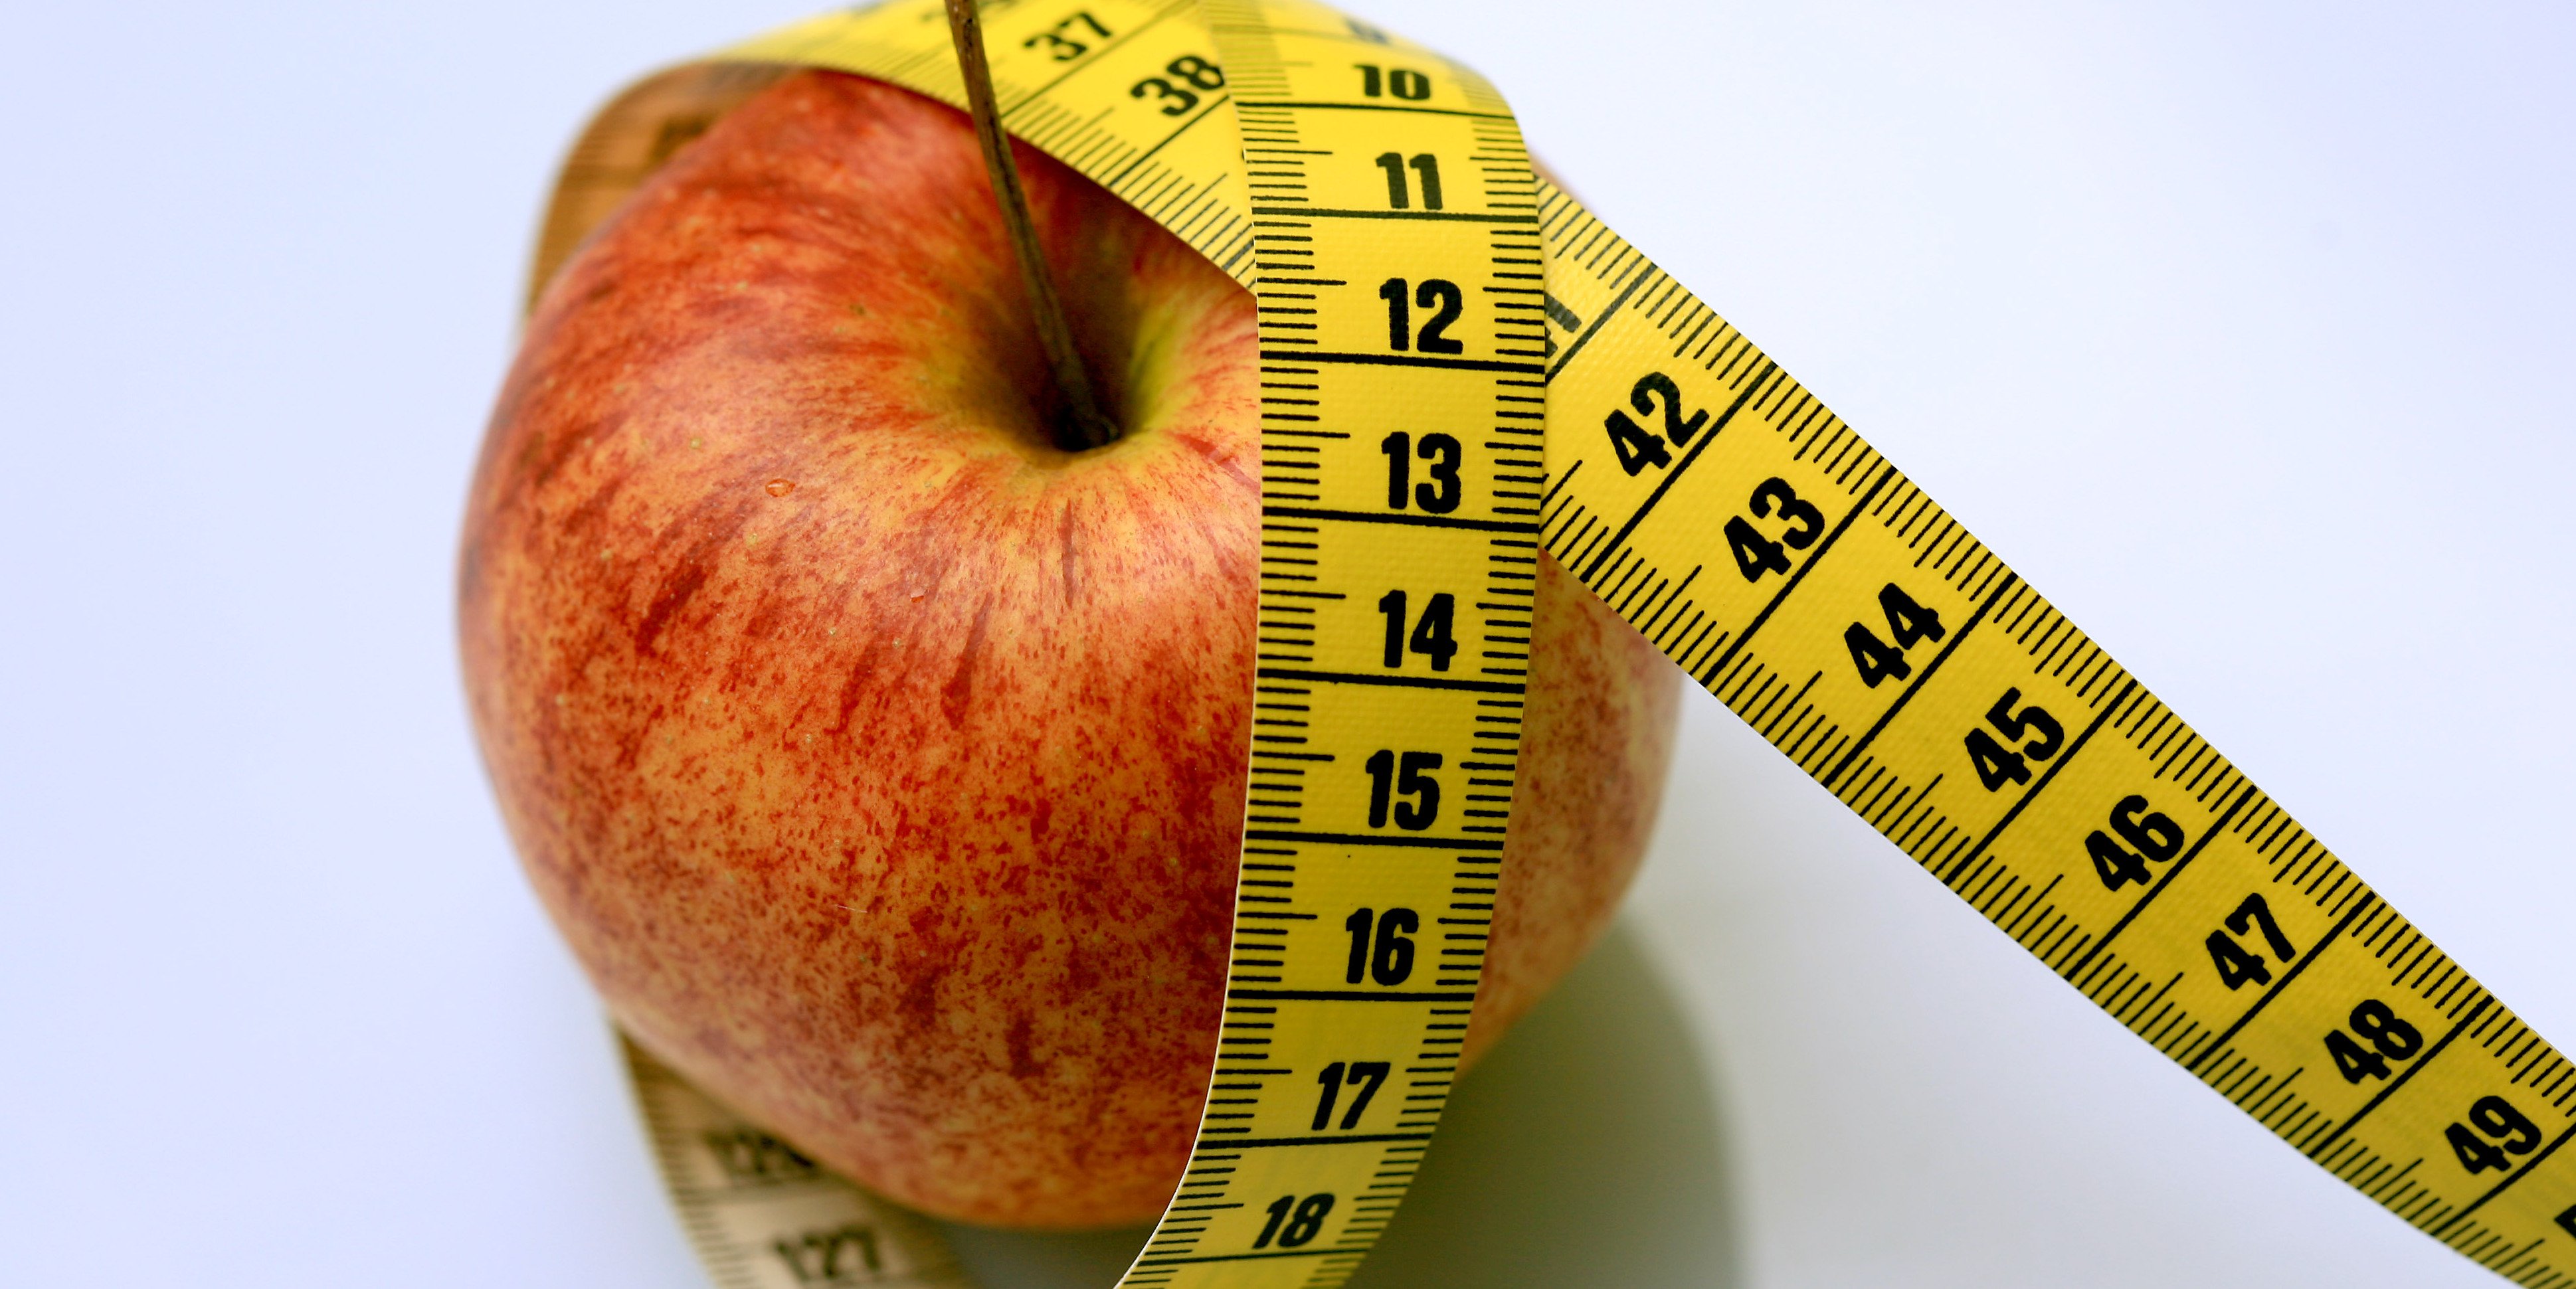 Apfel in Messband eingehüllt als Imagebild für Essstörungen